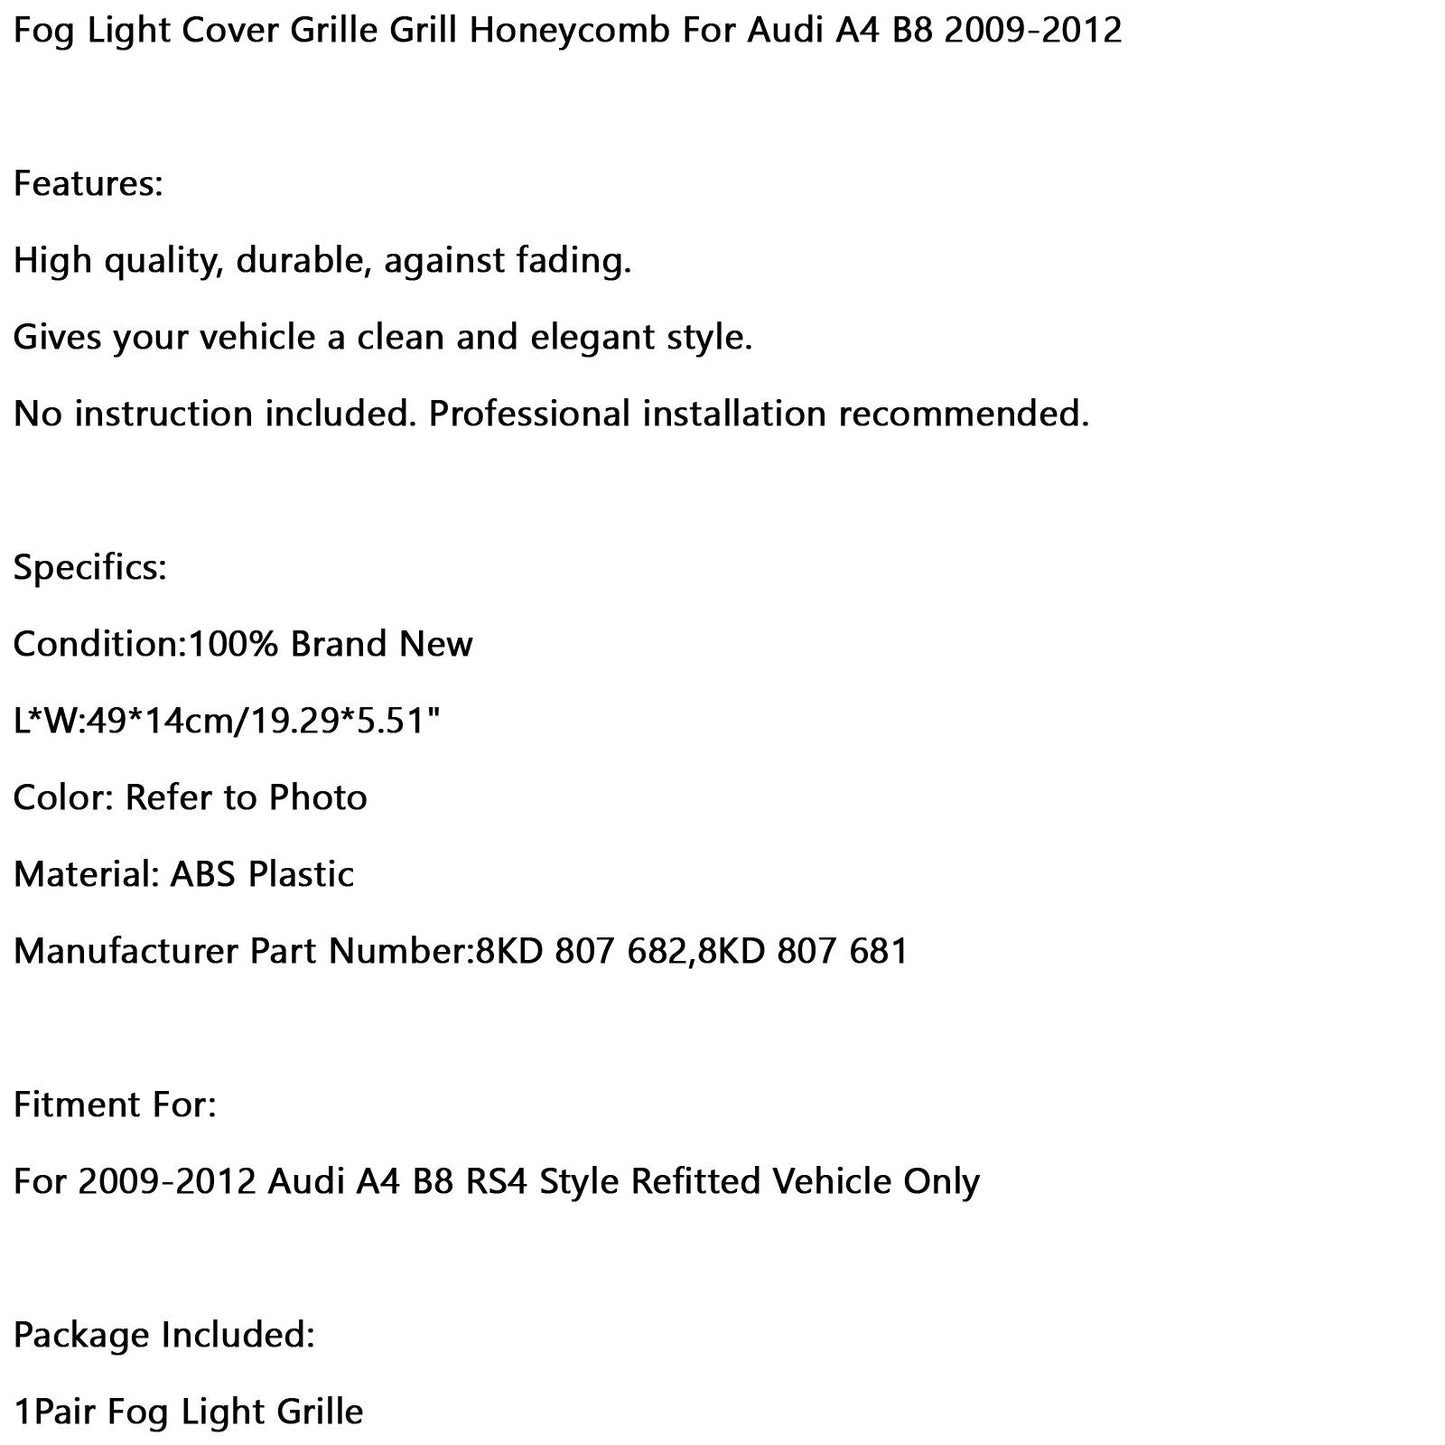 Paar Wabennetz Nebel Light Open Vent Grill Intake Anpassung Audi A4 B8 2009-2012 Generisches Generikum